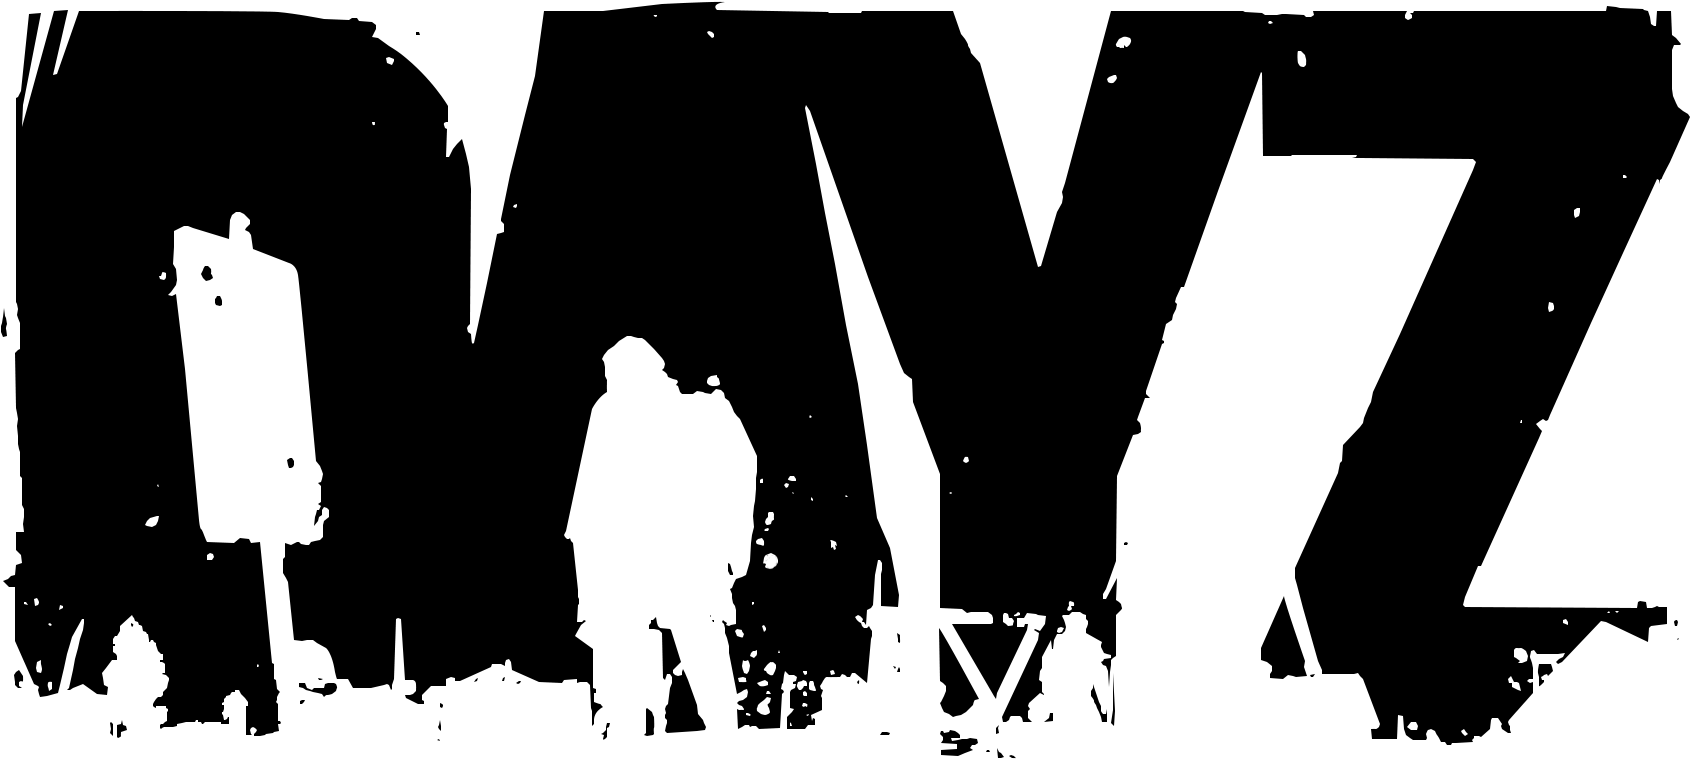 dayz png logo
